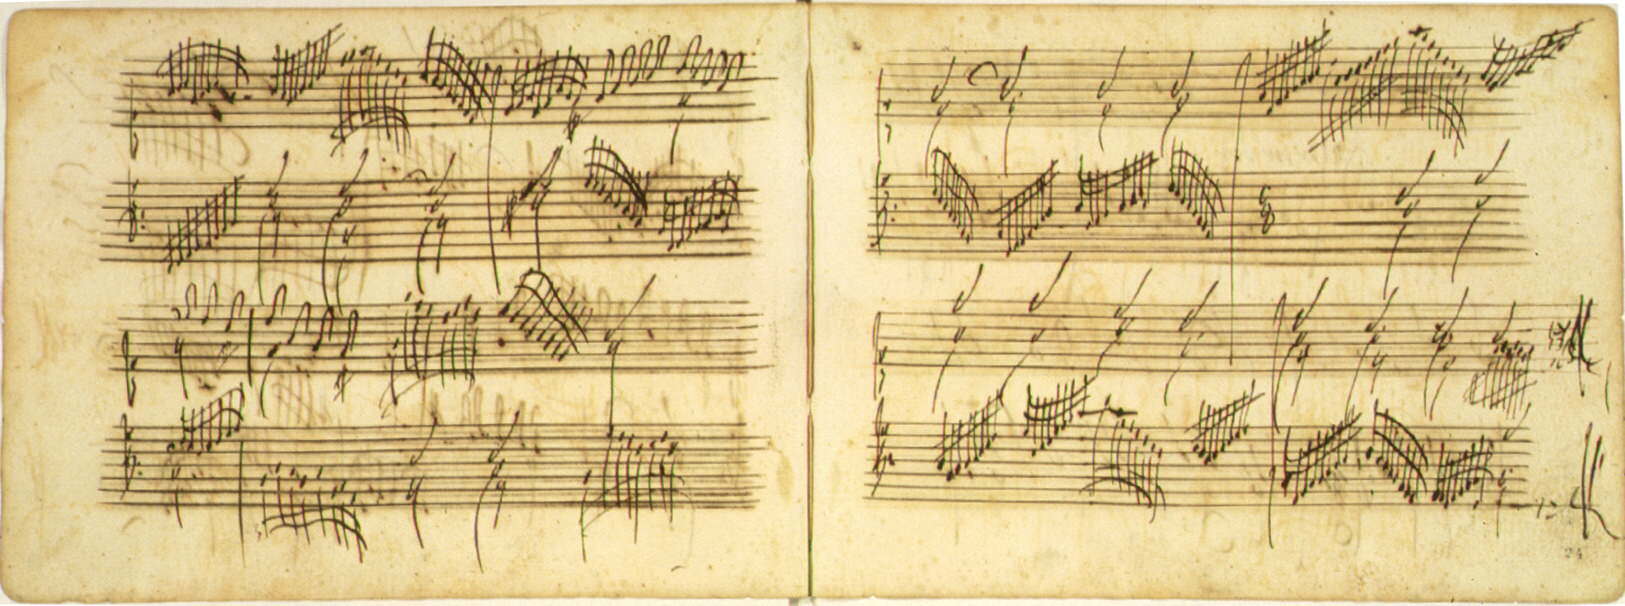 schubert compositions in 1826